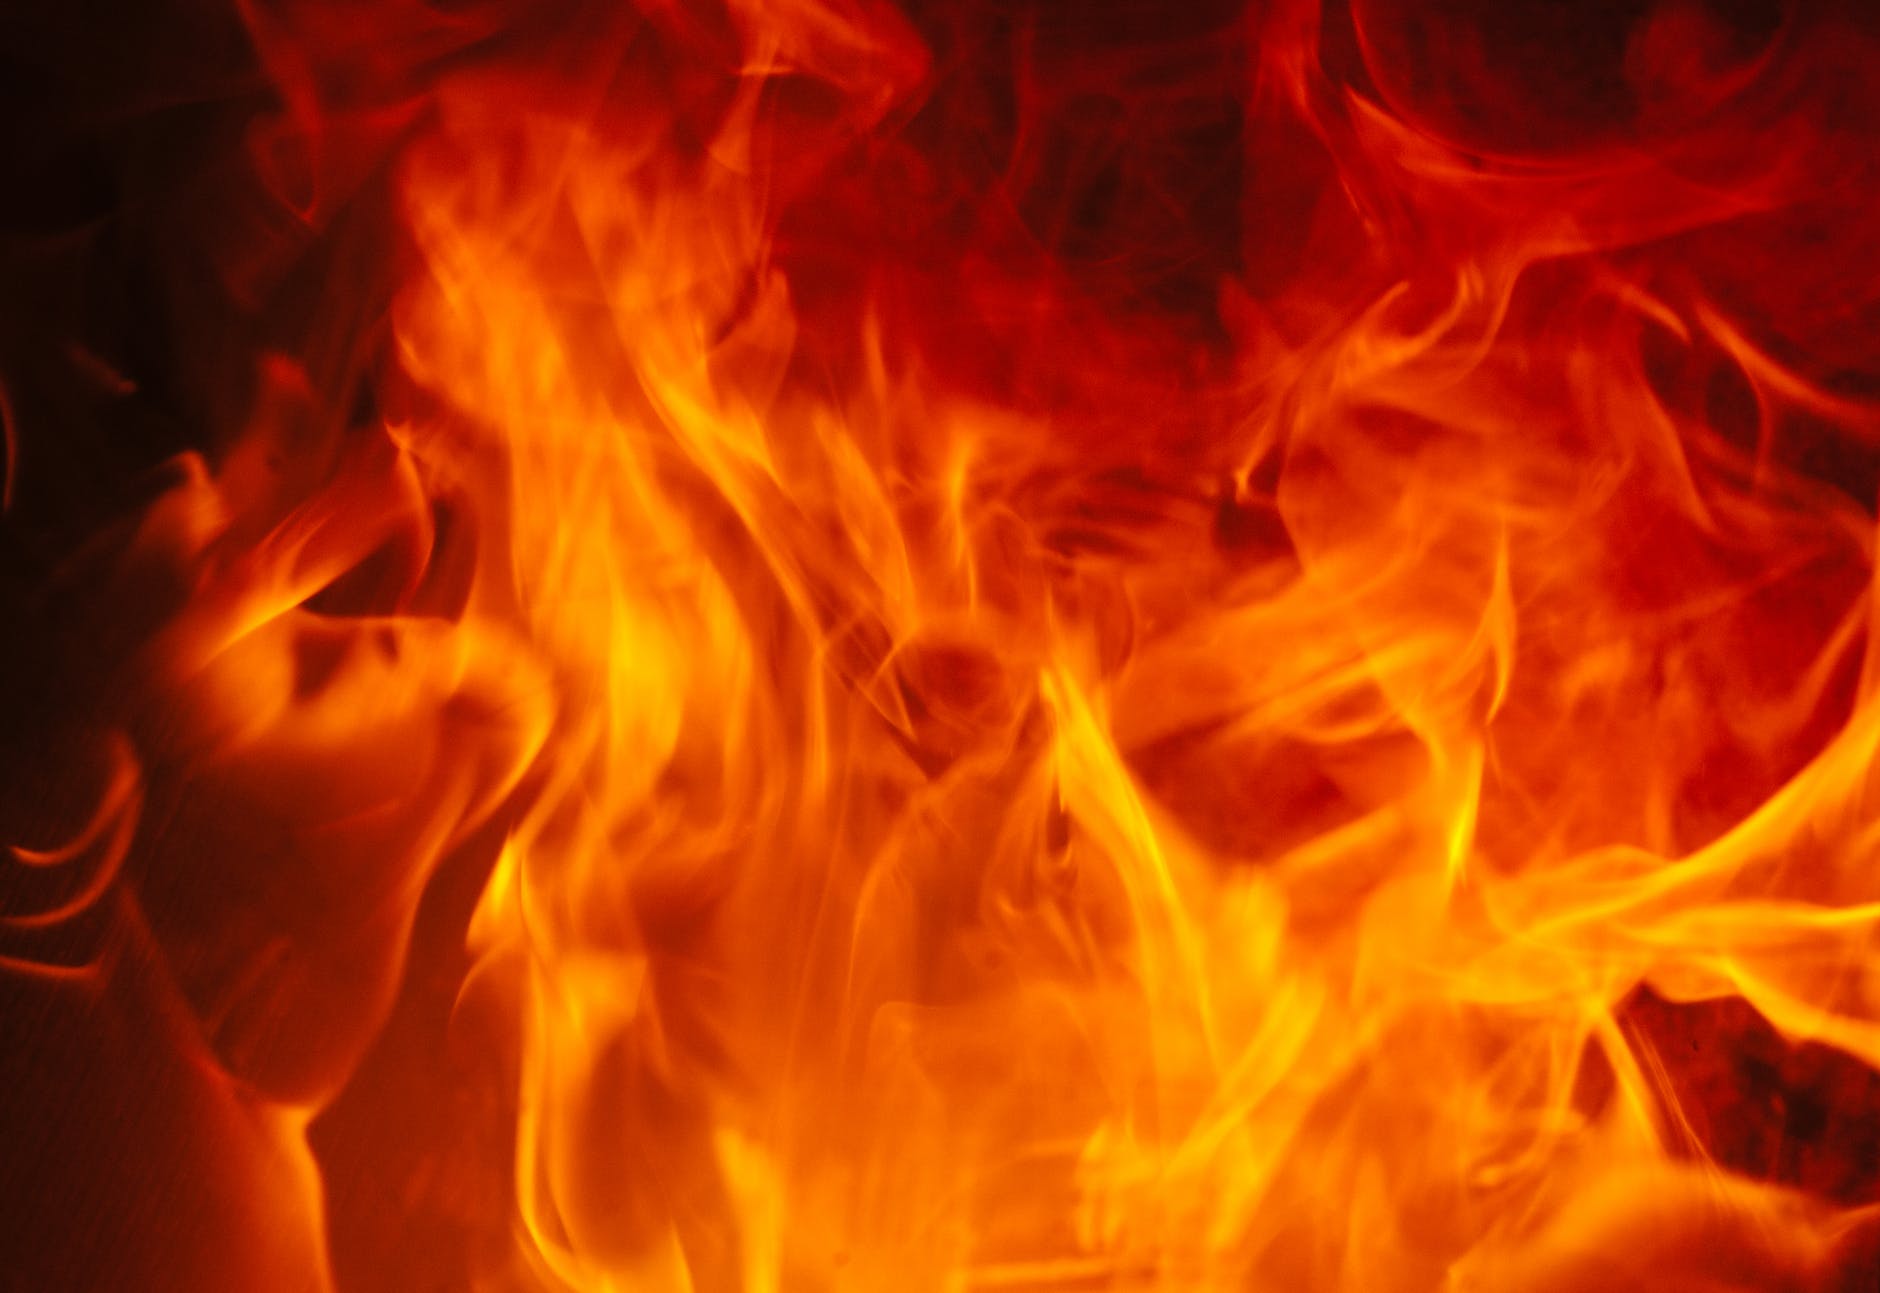 Seis autobuses ardieron en llamas en plantel ubicado en Hatillo